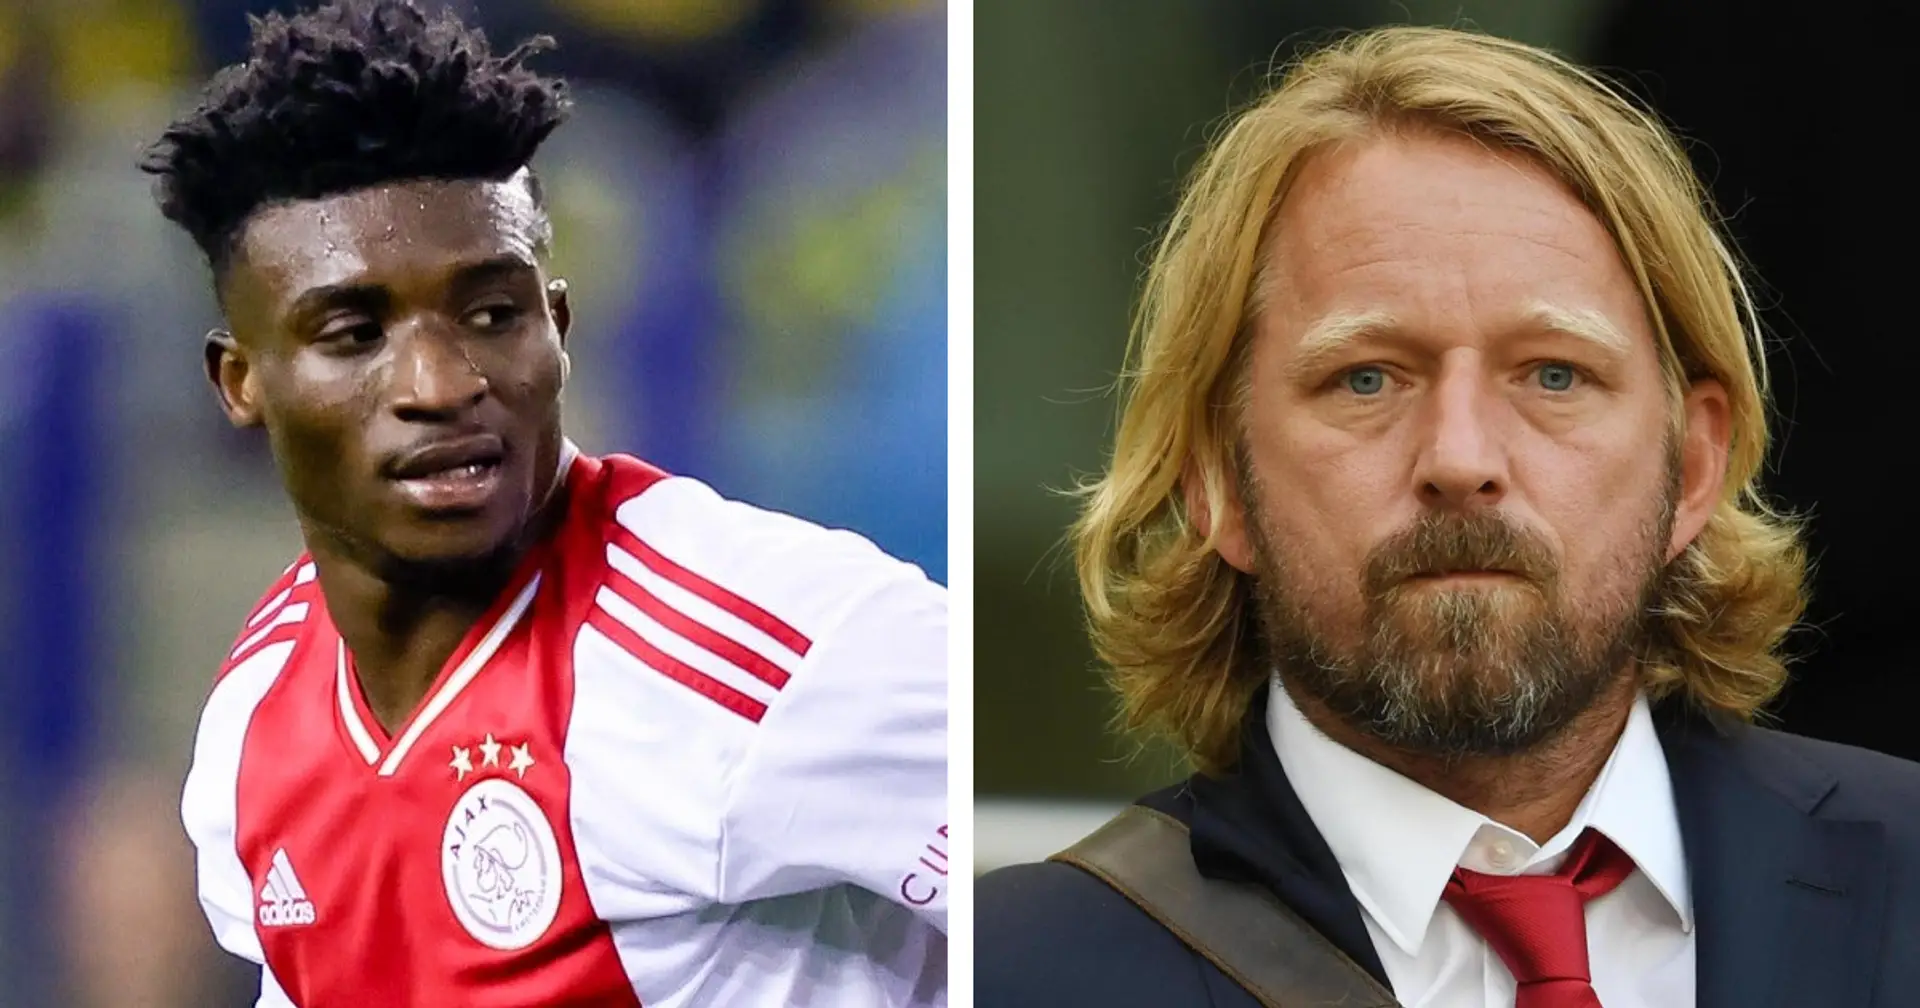 "Mislintat unterschreibt bei Ajax, um uns Kudus zu verkaufen": BVB-Fan liefert eine Theorie über Svens Wechsel